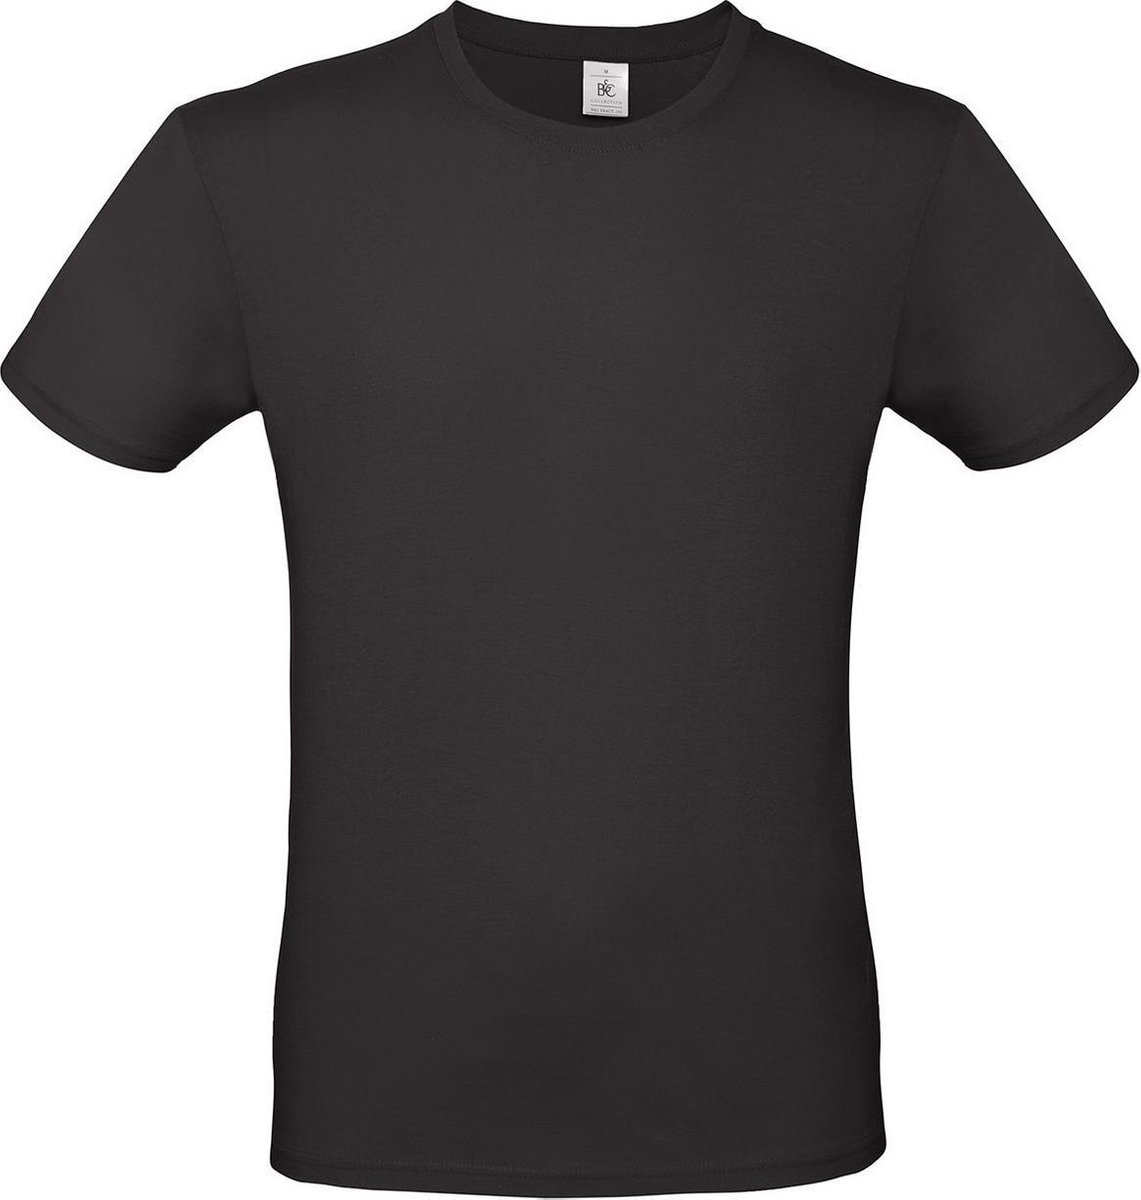 Set van 3x stuks zwart basic t-shirt met ronde hals voor heren - katoen - 145 grams - zwarte shirts / kleding, maat: M (50)